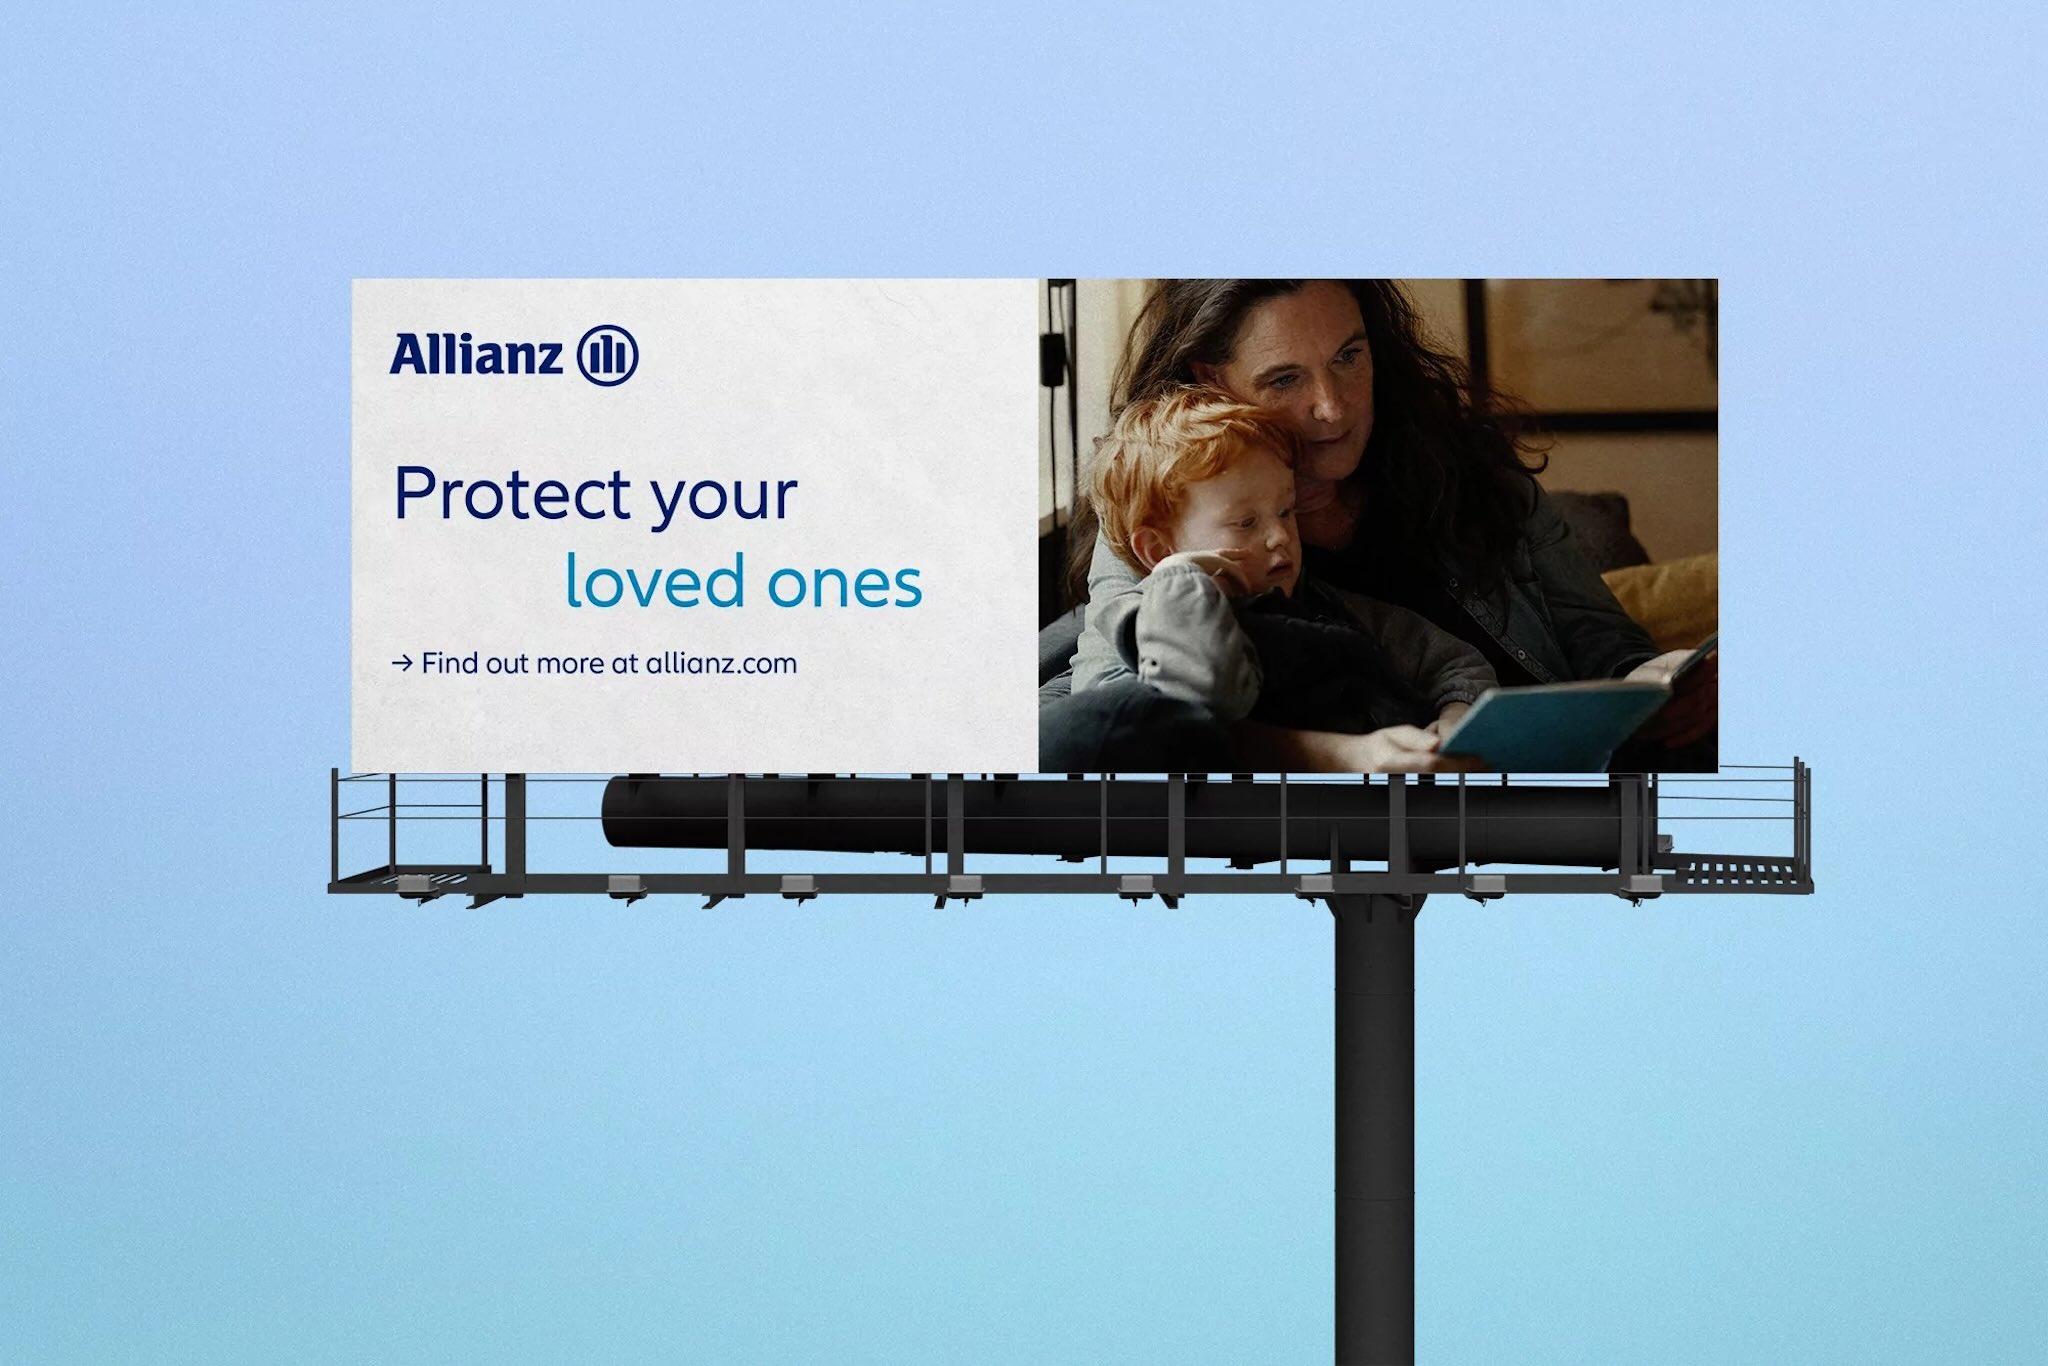 Allianz billboard